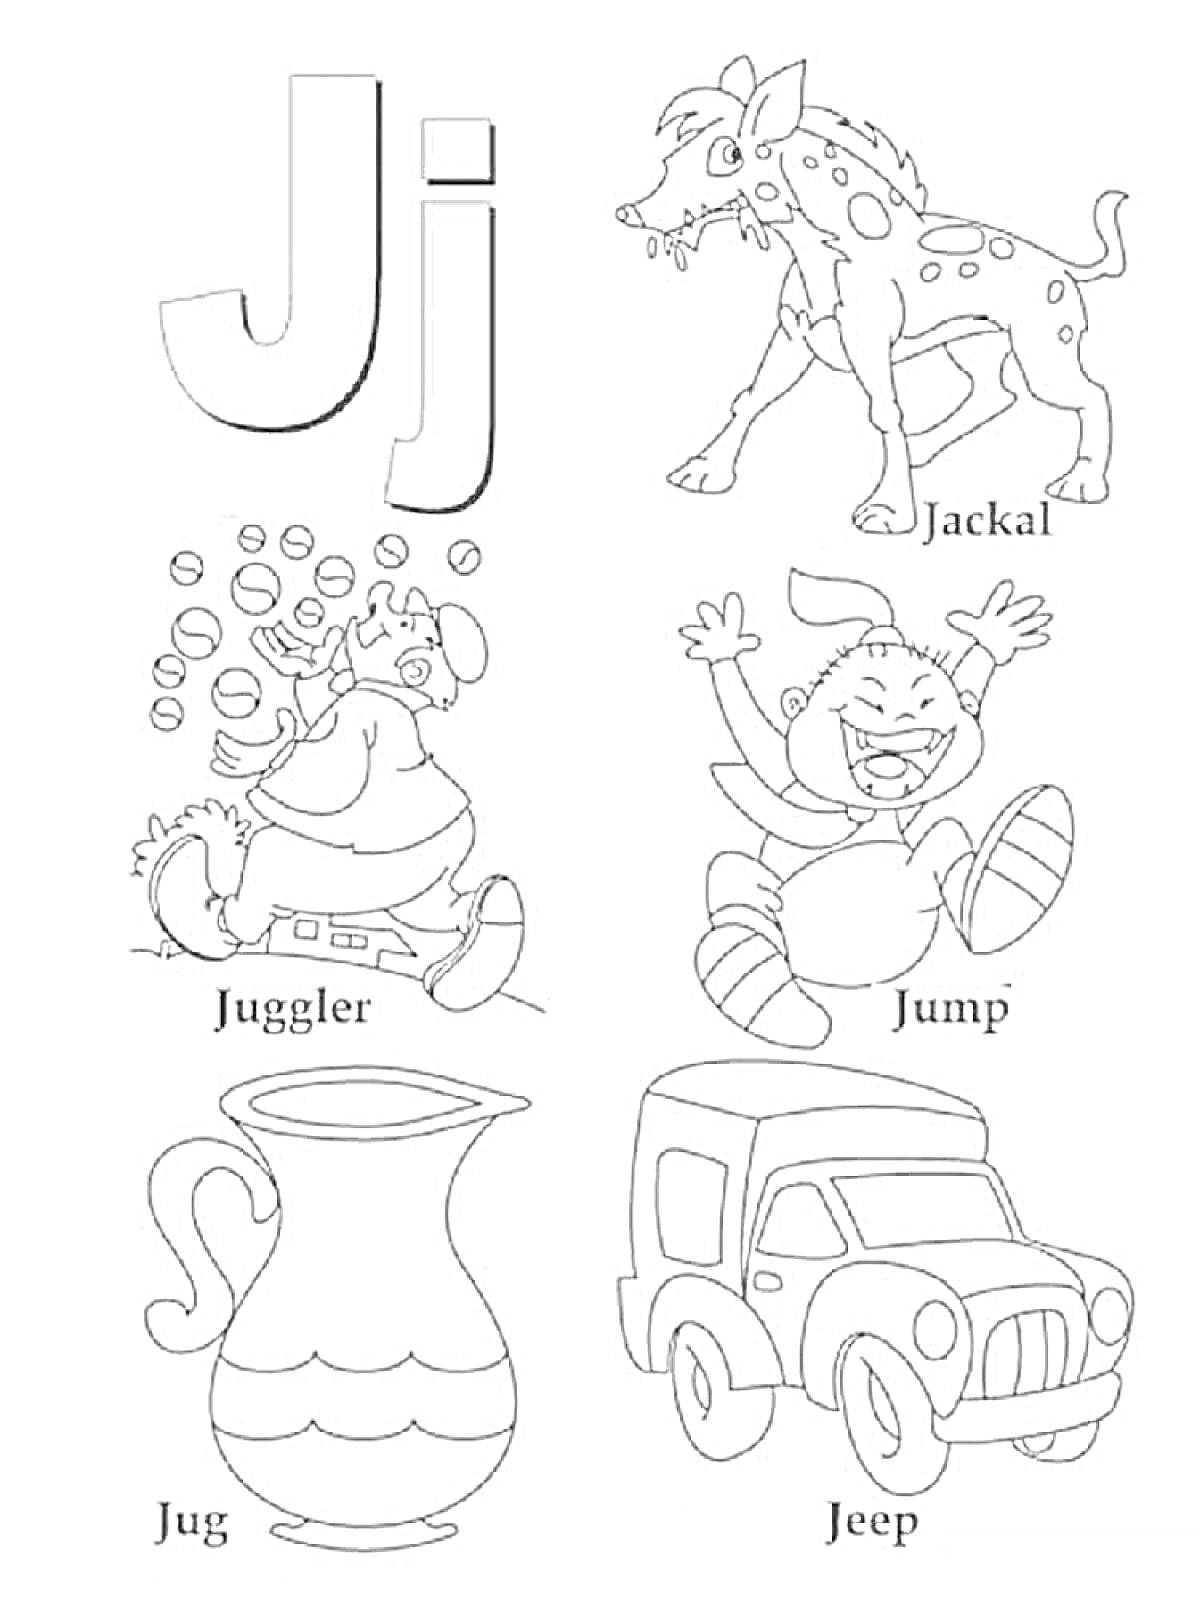 буква J с изображениями гиены, жонглера, прыжков, кувшина и джипа